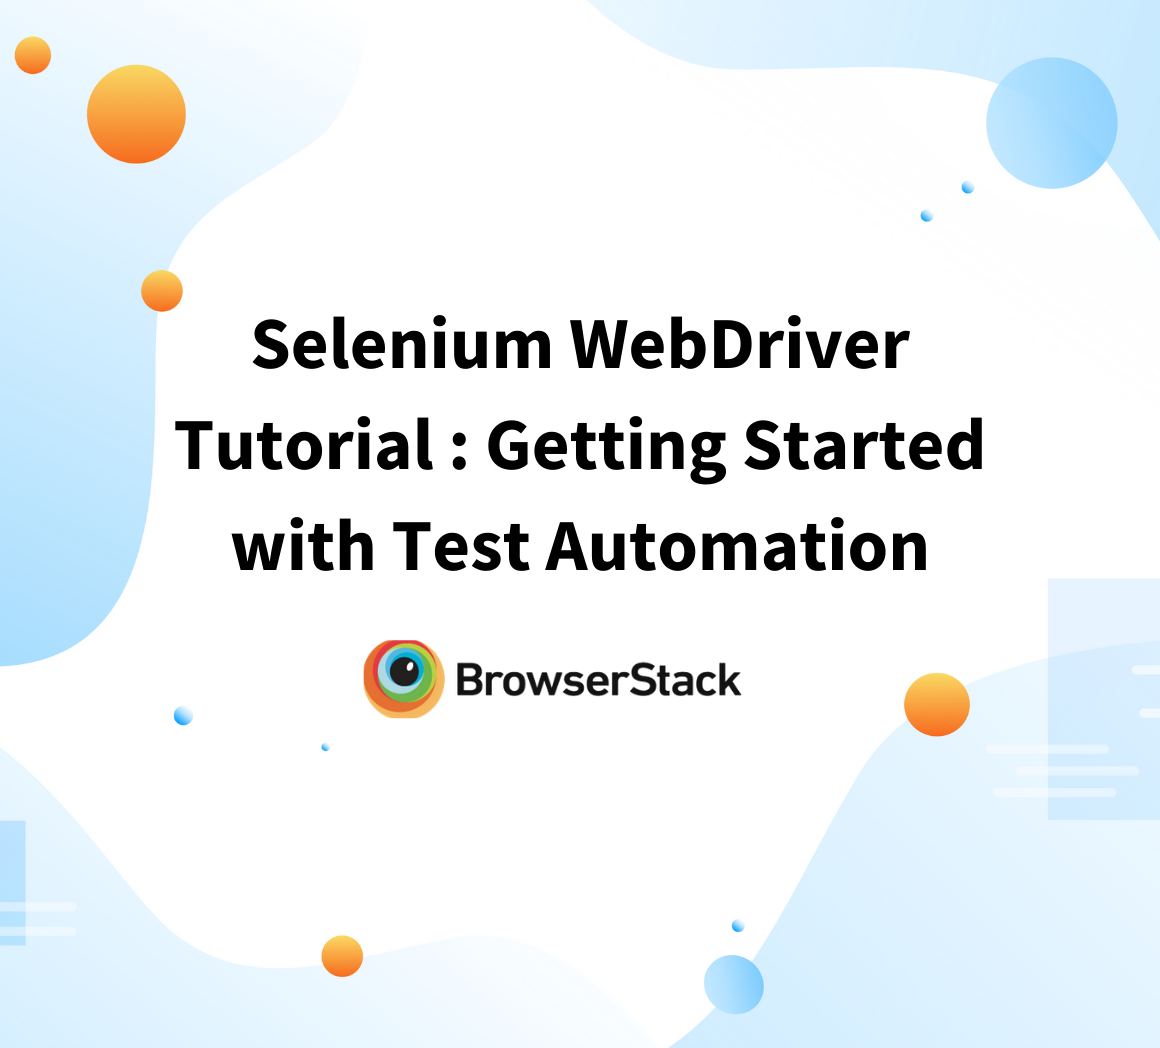 Selenium WebDriver Tutorial